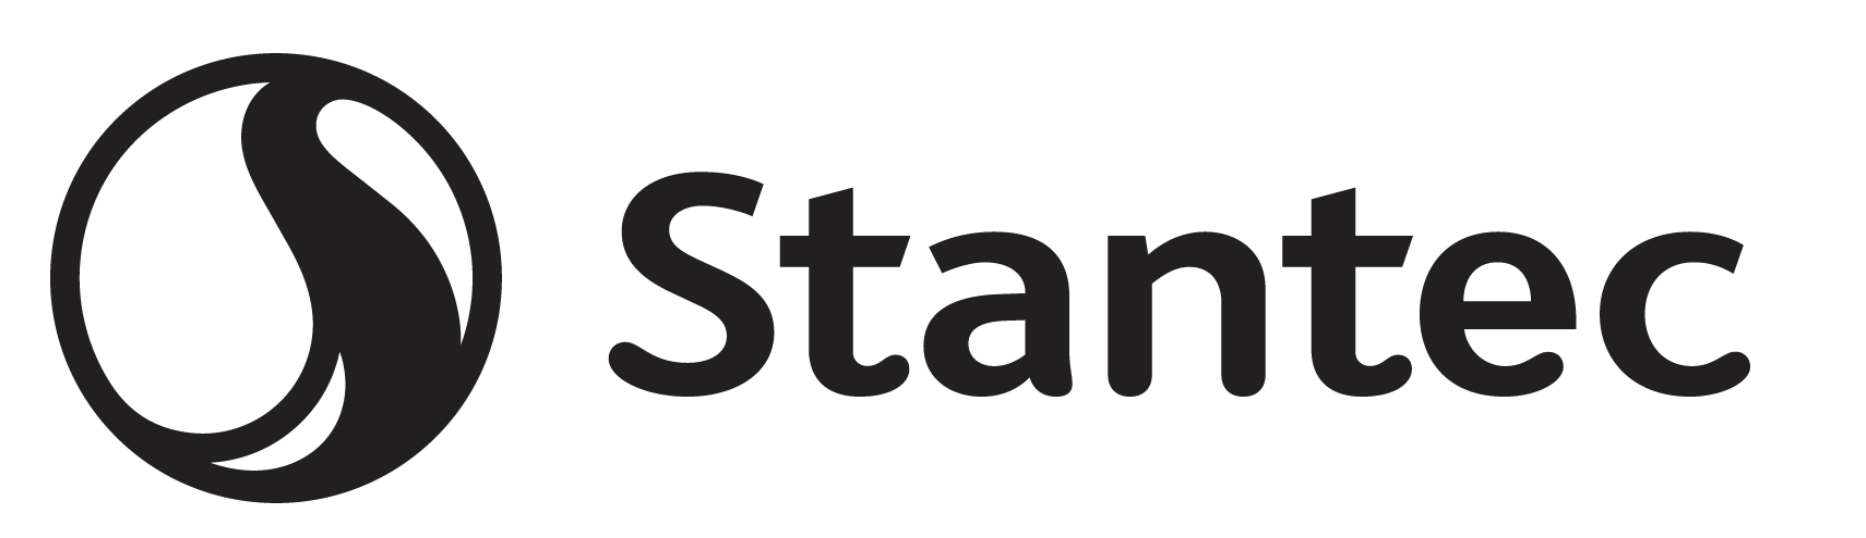 Stantec Logo